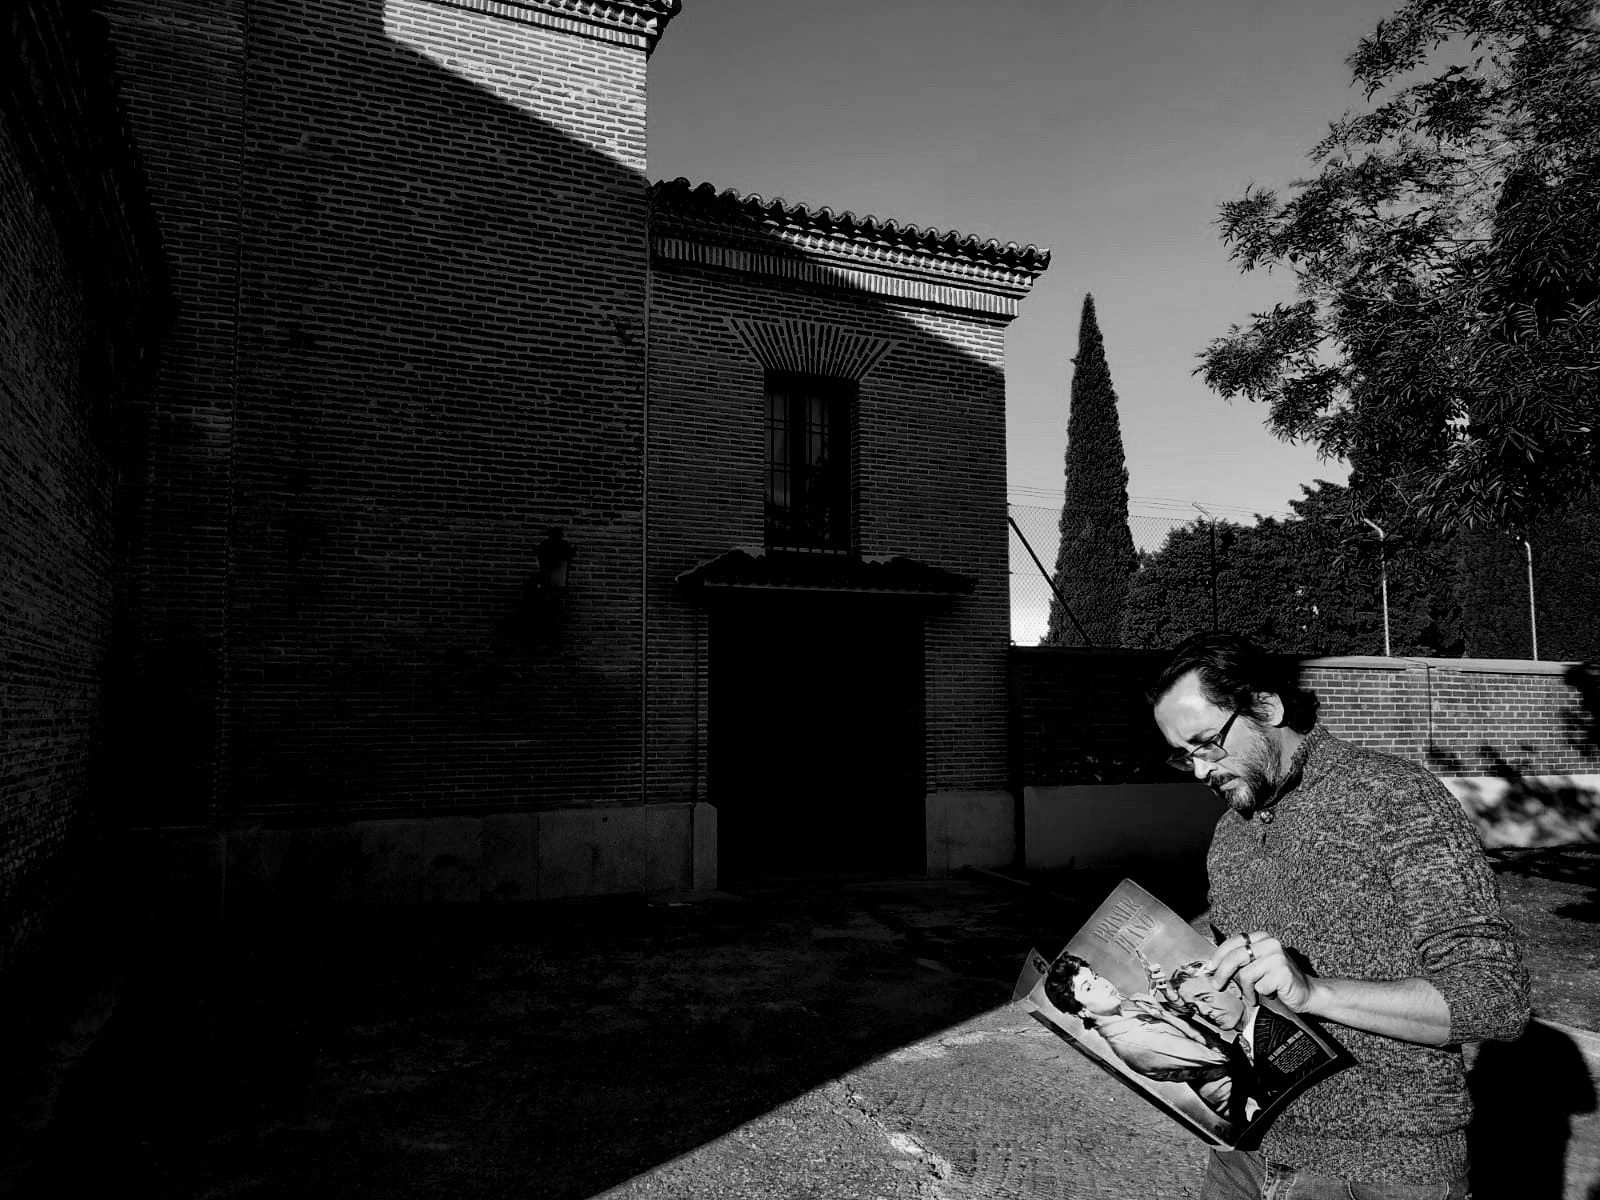 José Manuel Serrano Cueto, cineasta gaditano, leyendo la revista 'Primer Plano', con Jorge Rigaud en la portada, frente al cementerio de Butarque en Leganés.